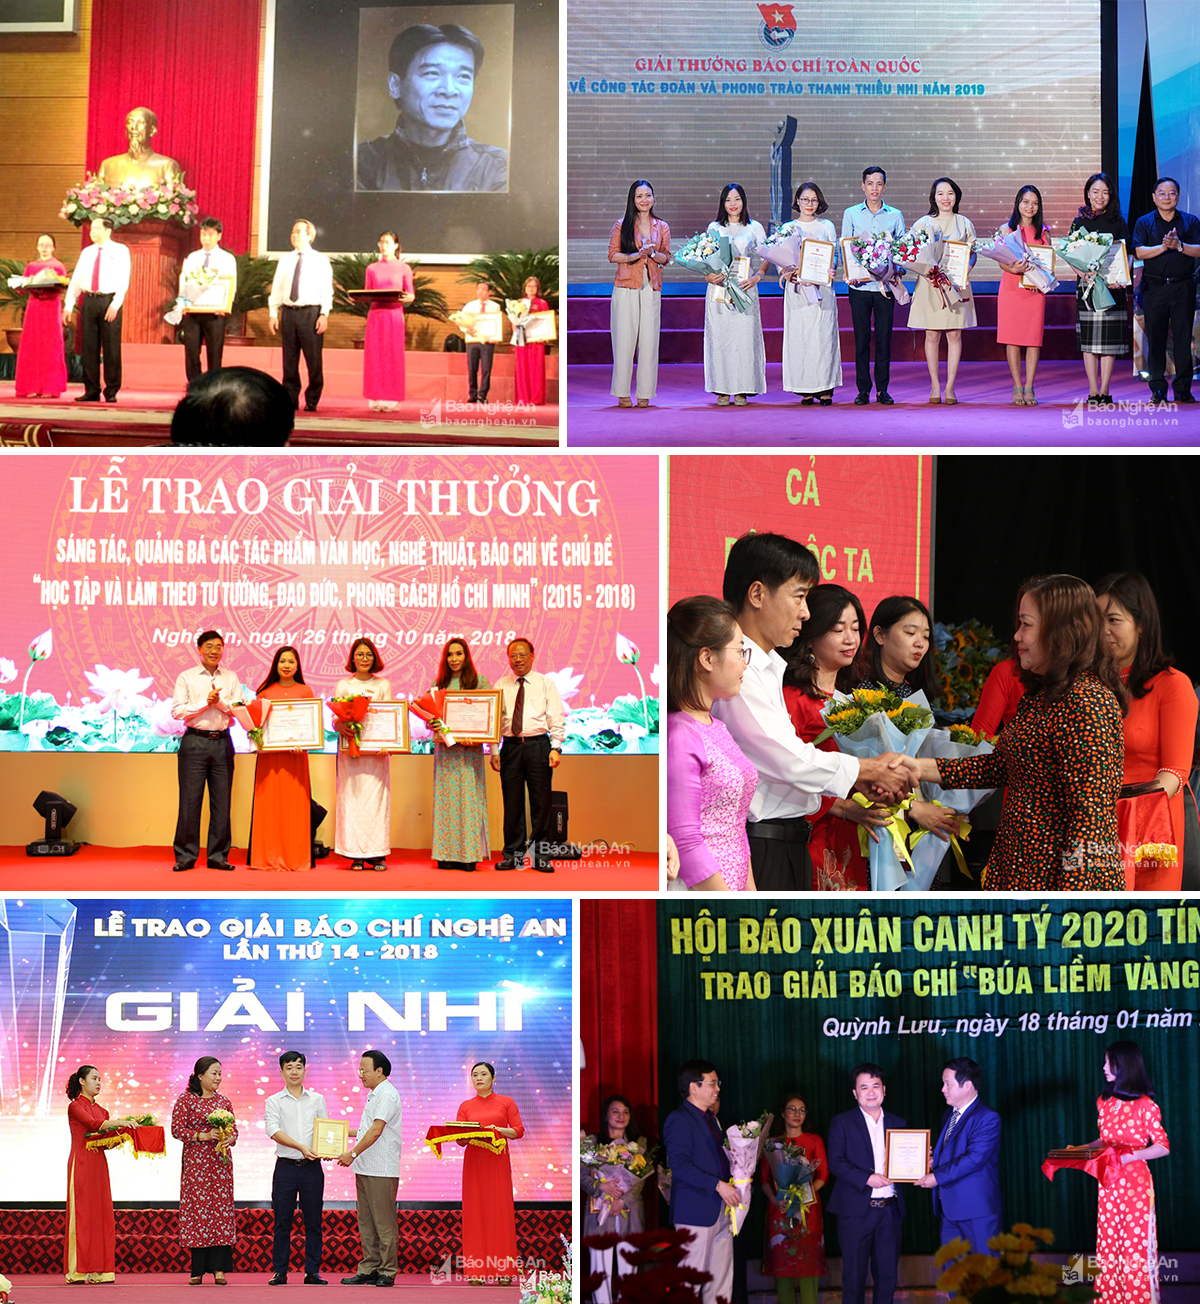 Báo Nghệ An luôn đạt giải cao tại các cuộc thi giải báo chí Quốc gia, báo chí cấp tỉnh.